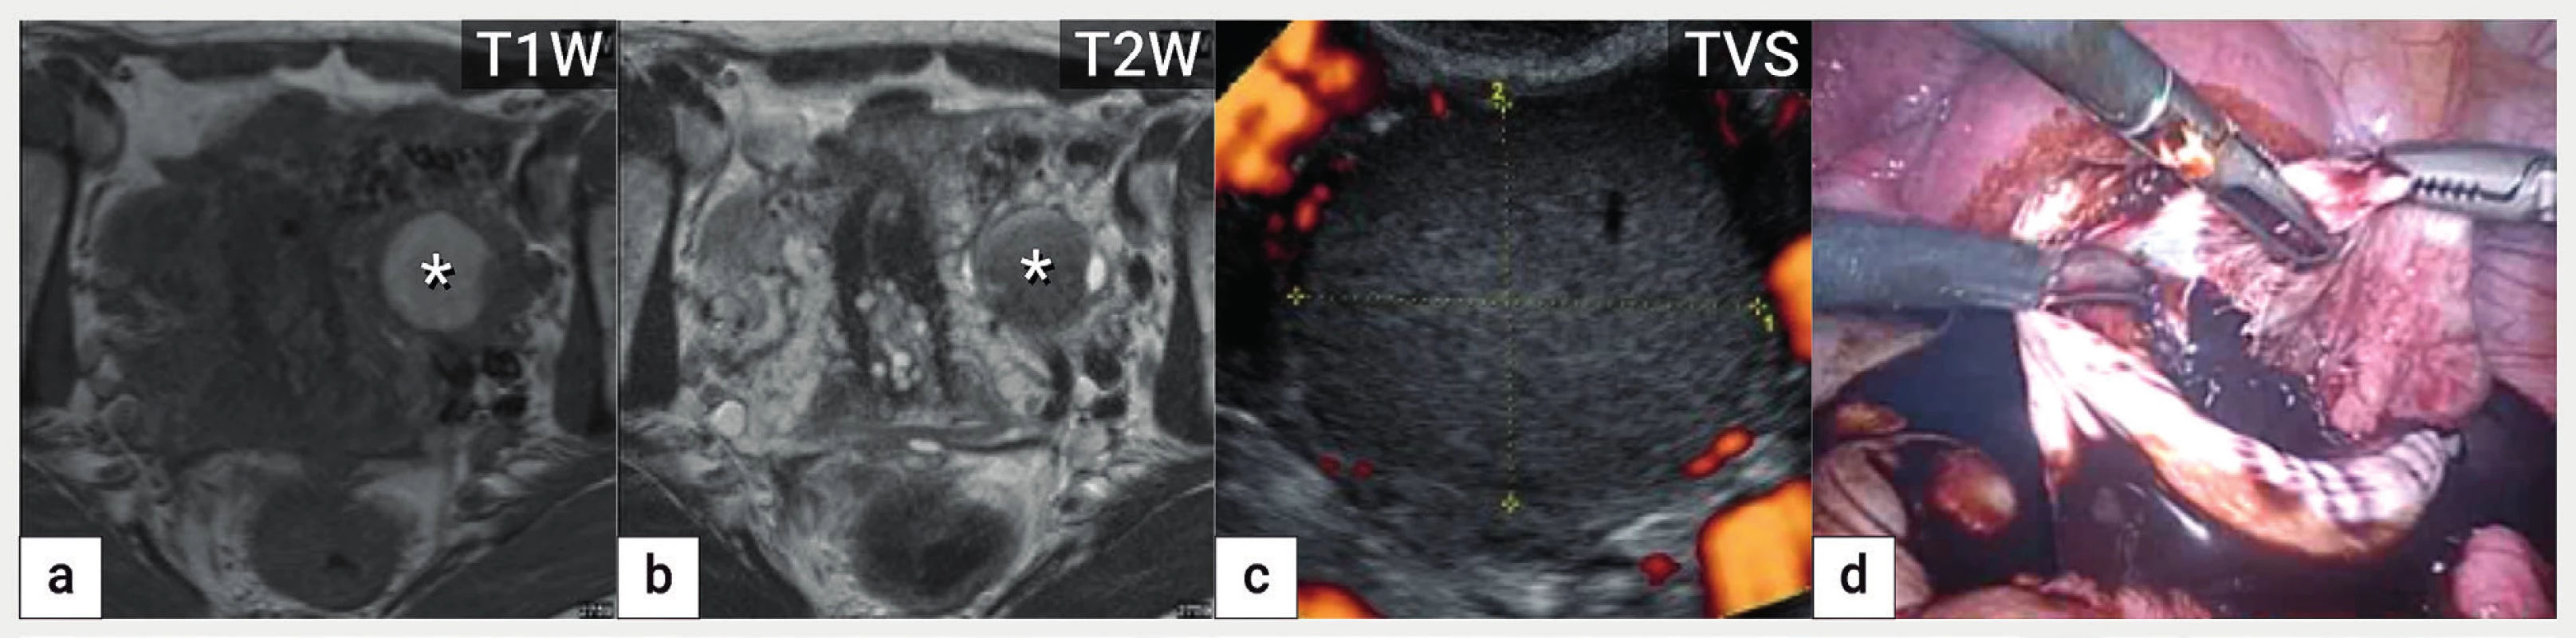 Endometroidní cysta<br>
Zobrazení endometroidní cysty v magnetické rezonanci na podkladě přítomnosti rozpadových produktů hemoglobinu, která je v T1 váženém
obrazu hyperintenzní (zvýšený signál) (a) a v T2 váženém obraze hypointenzní (tzv. shading) (b), v ultrazvukovém zobrazení patrná avaskulární
unilokulární cysta s denzní hypoechogenní intracystickou tekutinou (c) a intraoperační nález z laparoskopické cystektomie (d).
T1W a T2W – T1 a T2 vážené obrazy v magnetické rezonanci, TVS – transvaginální sonografie